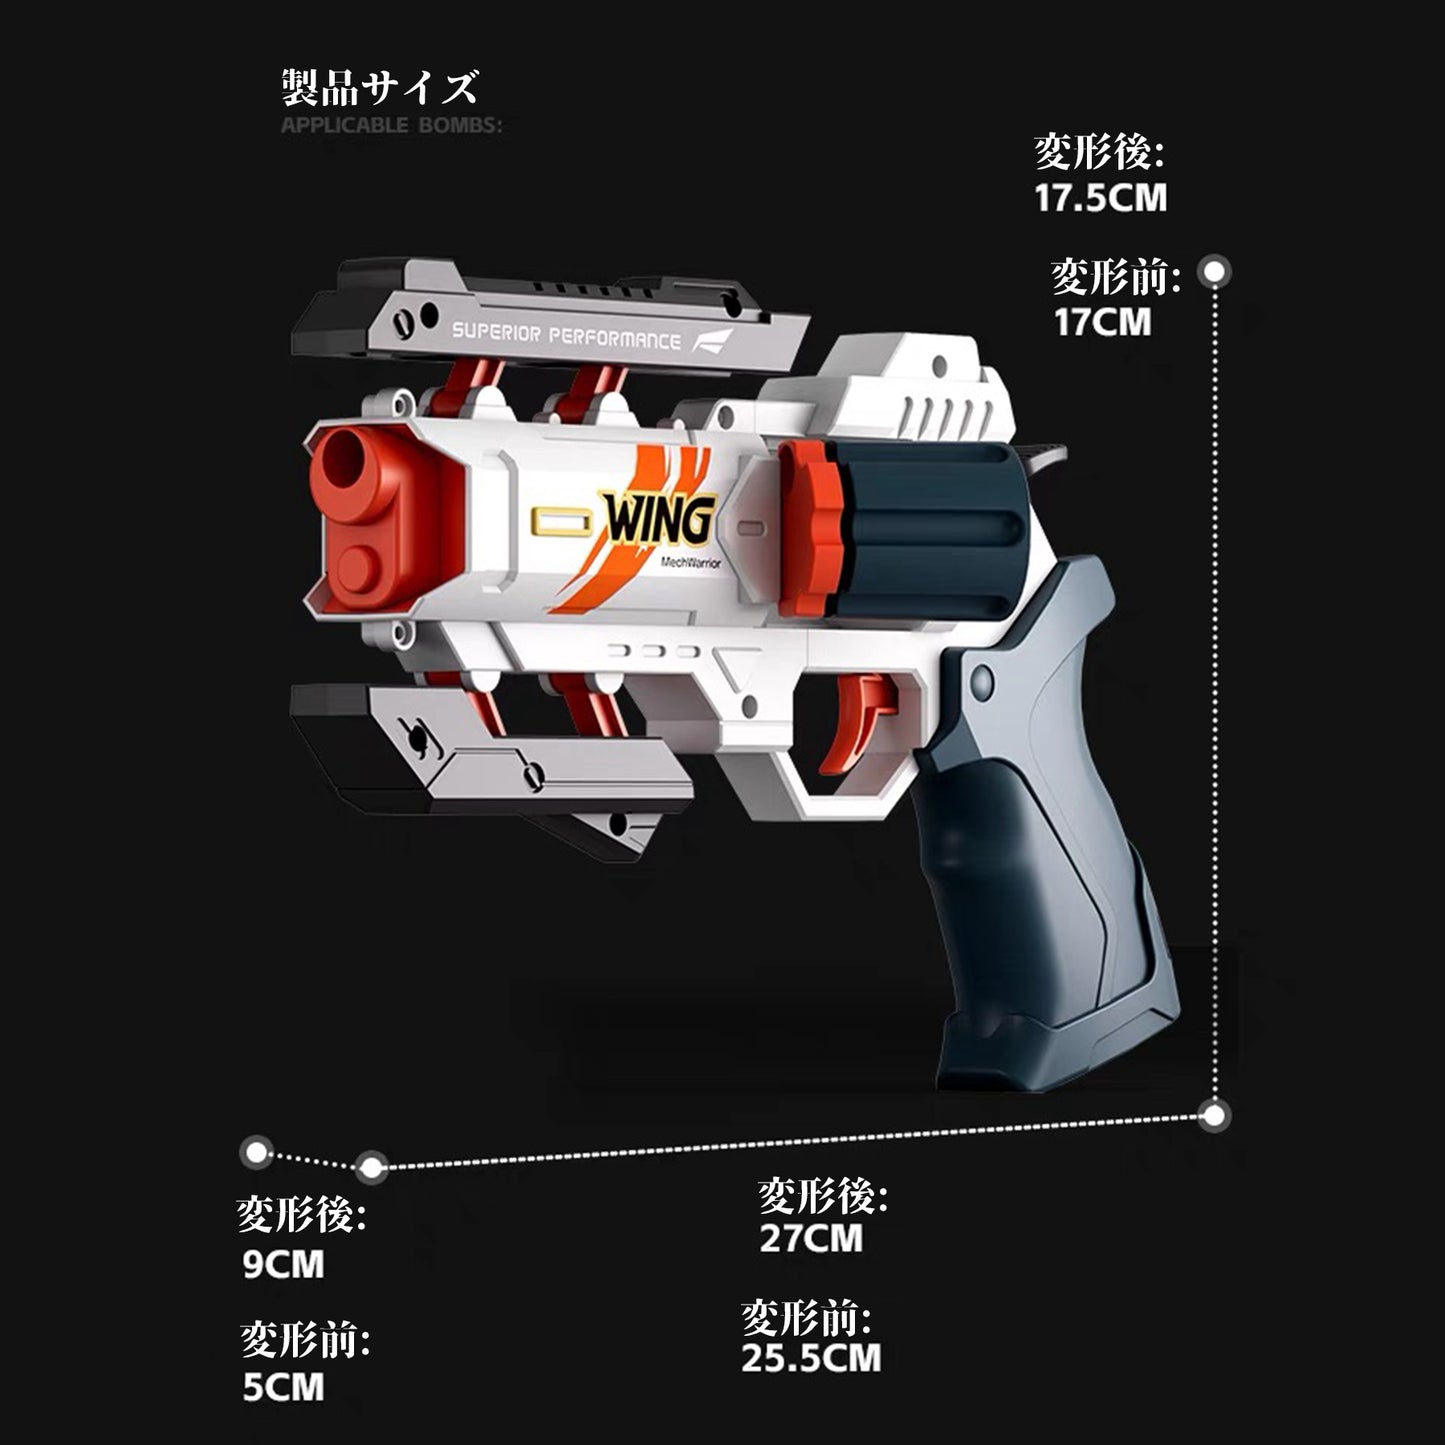 ナーフ系 APEXのウイングマン風の銃  単発式 ハンドガン風おもちゃ銃  変形可能なおもちゃの銃 スポンジ弾 舞台用小道具  誕生日プレゼント